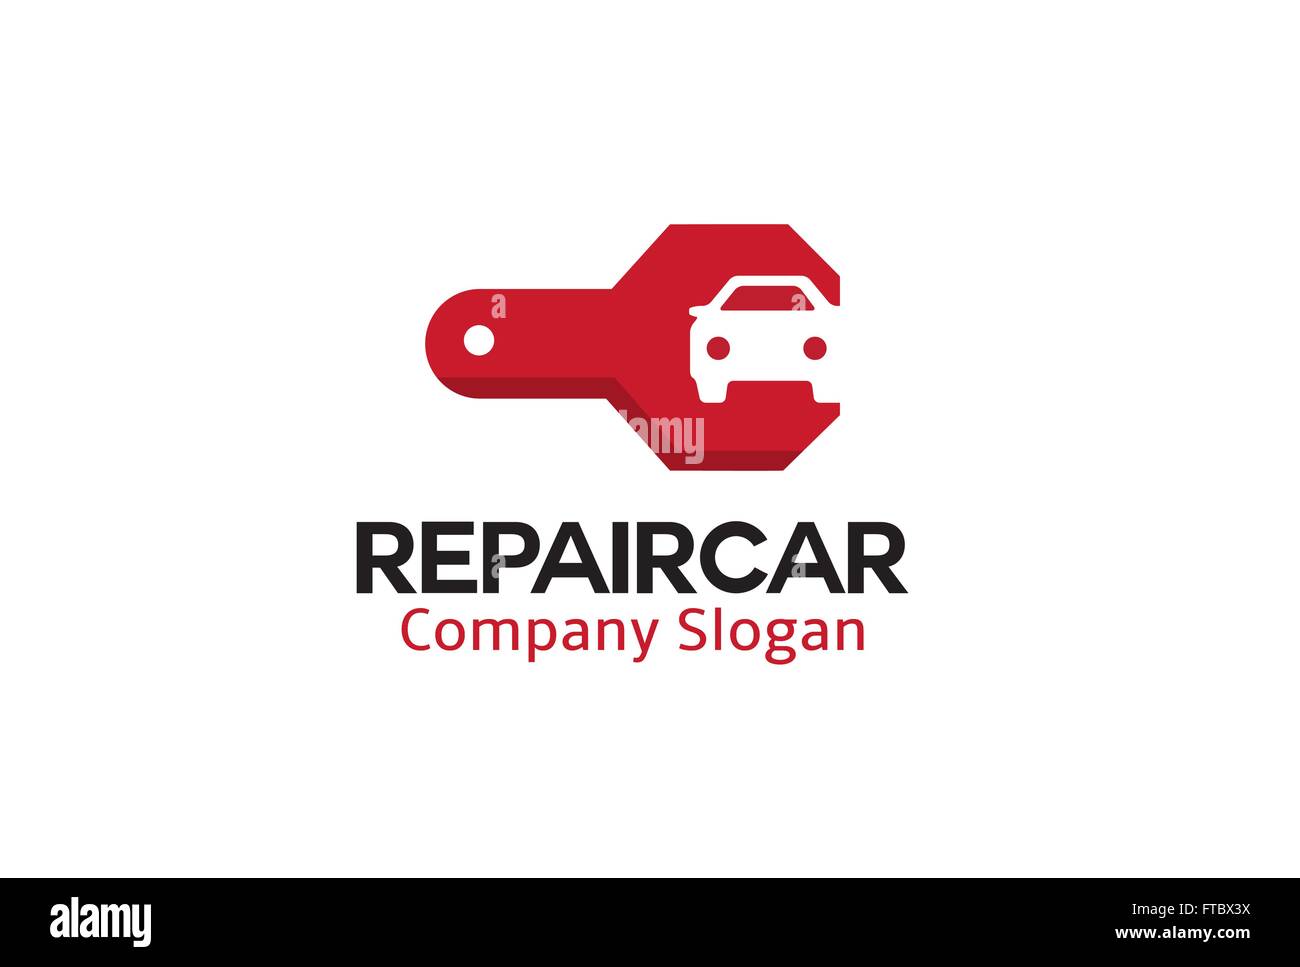 Repair Car Design Illustration Stock Vector